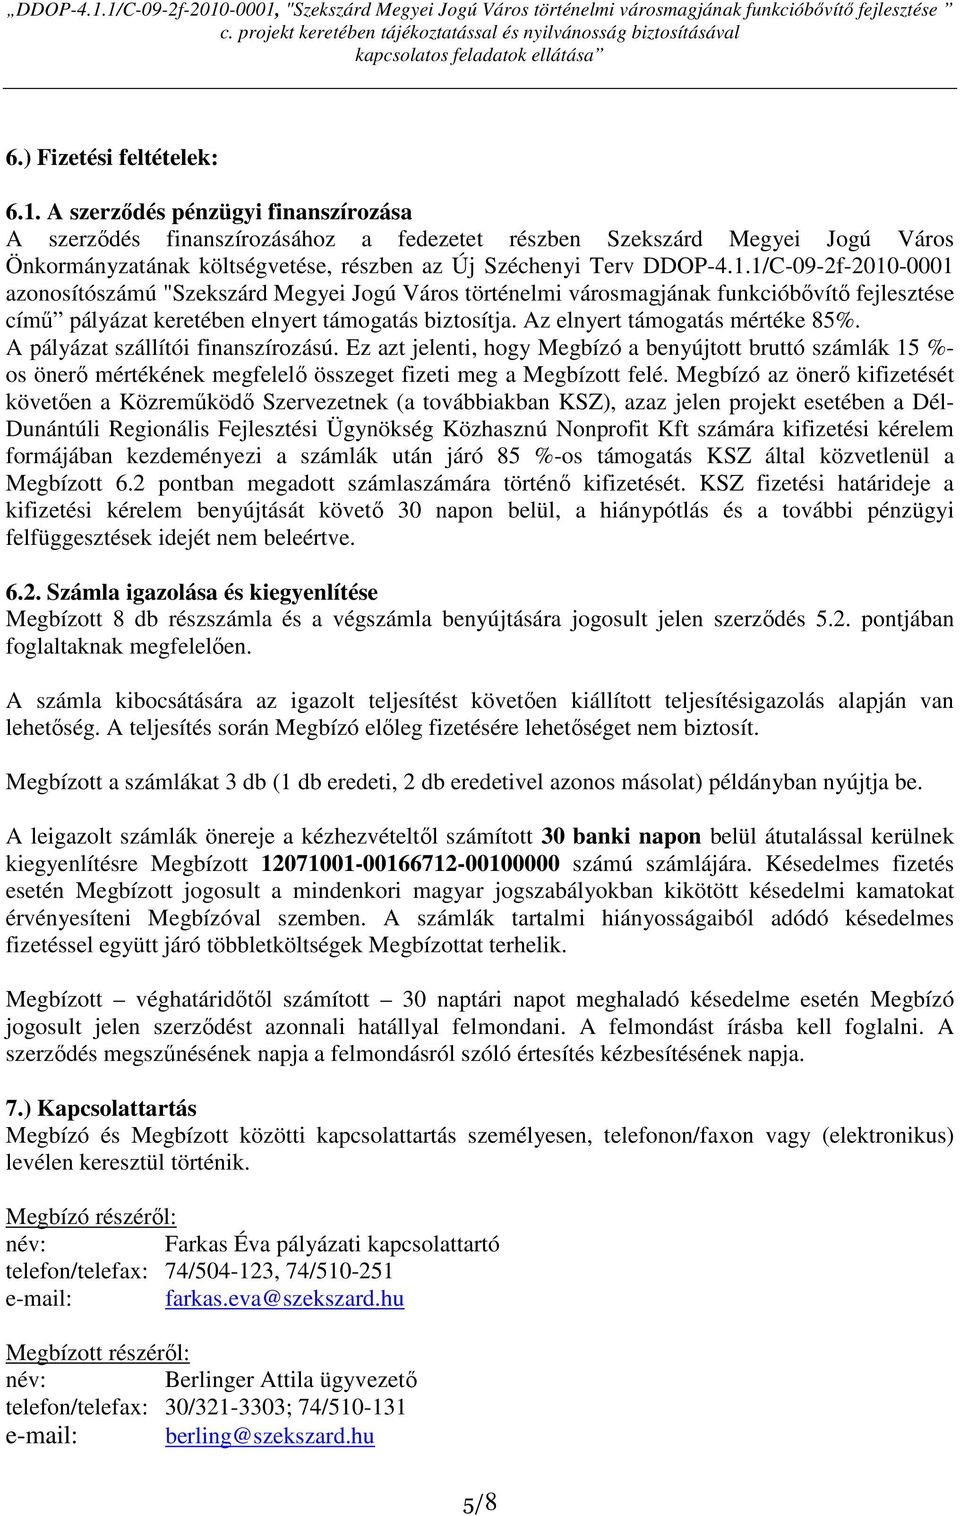 1/C-09-2f-2010-0001 azonosítószámú "Szekszárd Megyei Jogú Város történelmi városmagjának funkcióbıvítı fejlesztése címő pályázat keretében elnyert támogatás biztosítja.